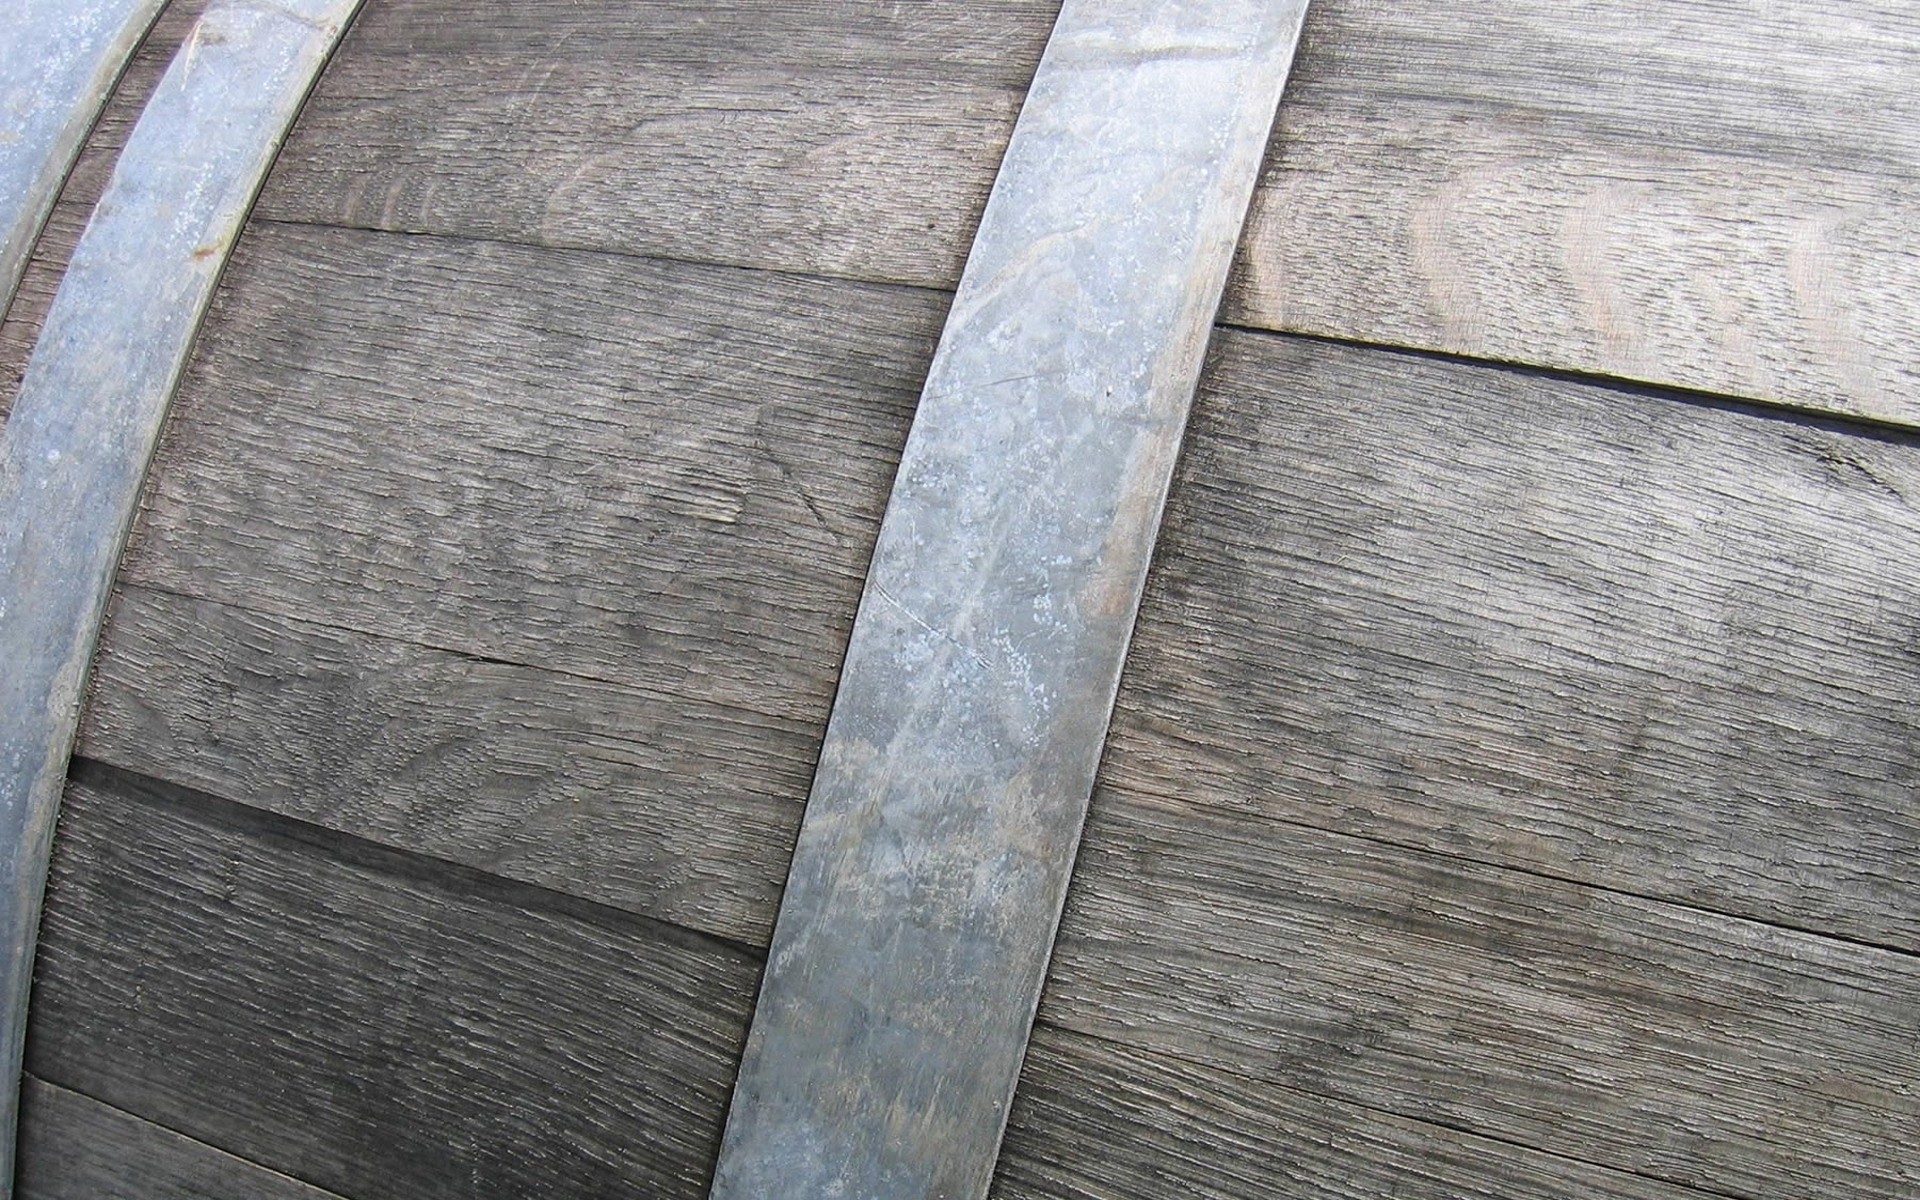 General 1920x1200 macro barrels wood closeup texture